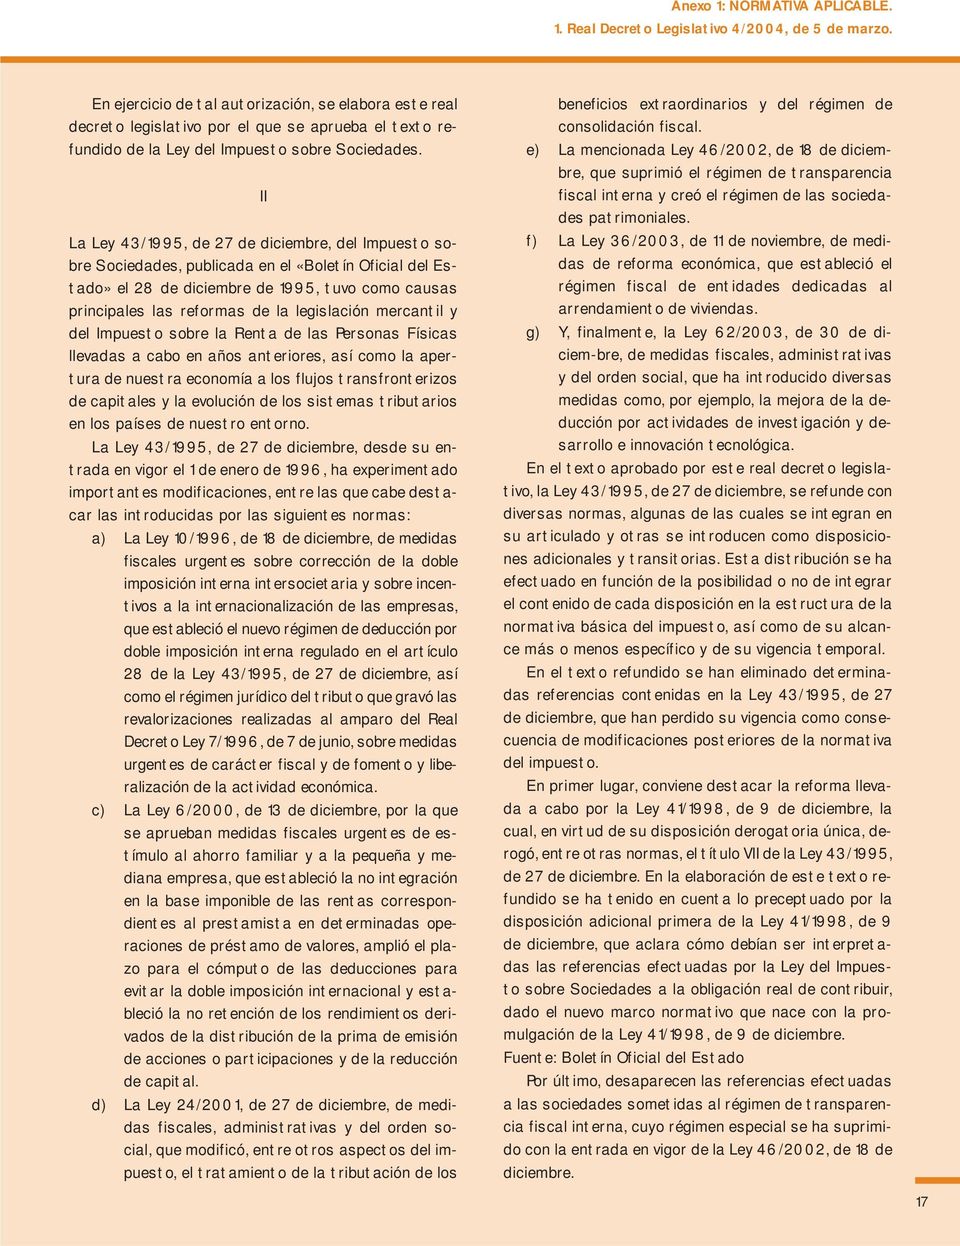 II La Ley 43/1995, de 27 de diciembre, del Impuesto sobre Sociedades, publicada en el «Boletín Oficial del Estado» el 28 de diciembre de 1995, tuvo como causas principales las reformas de la